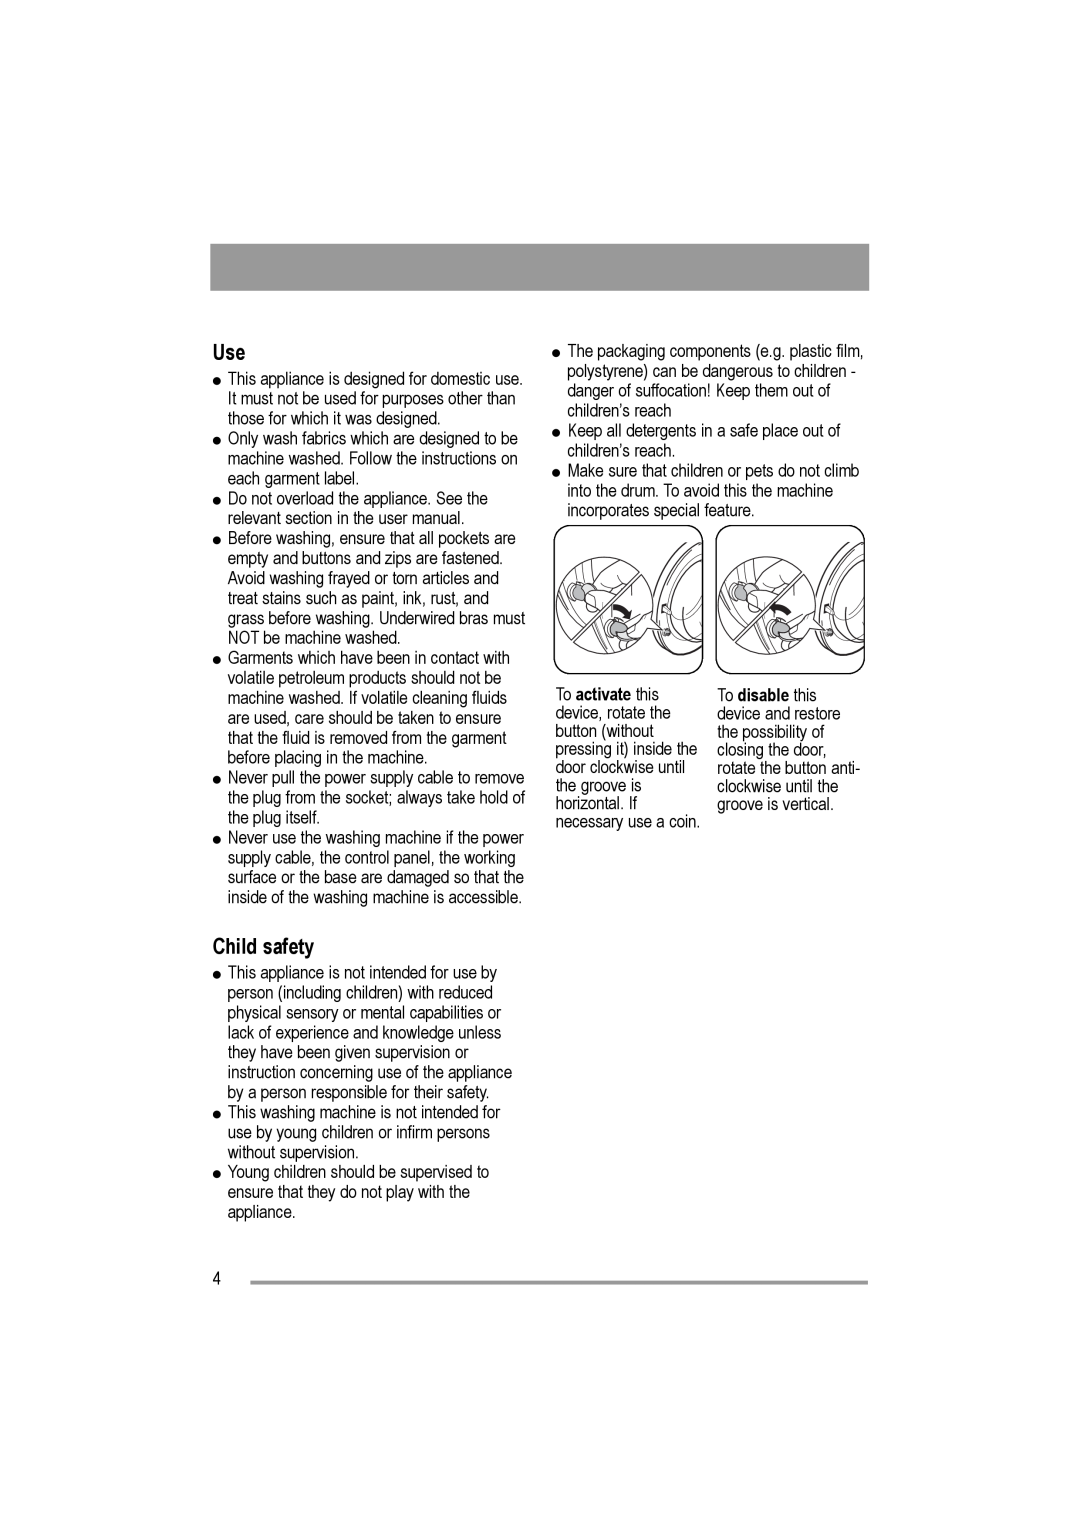 Electrolux AW 1402 W, AW 1202 W user manual Child safety 